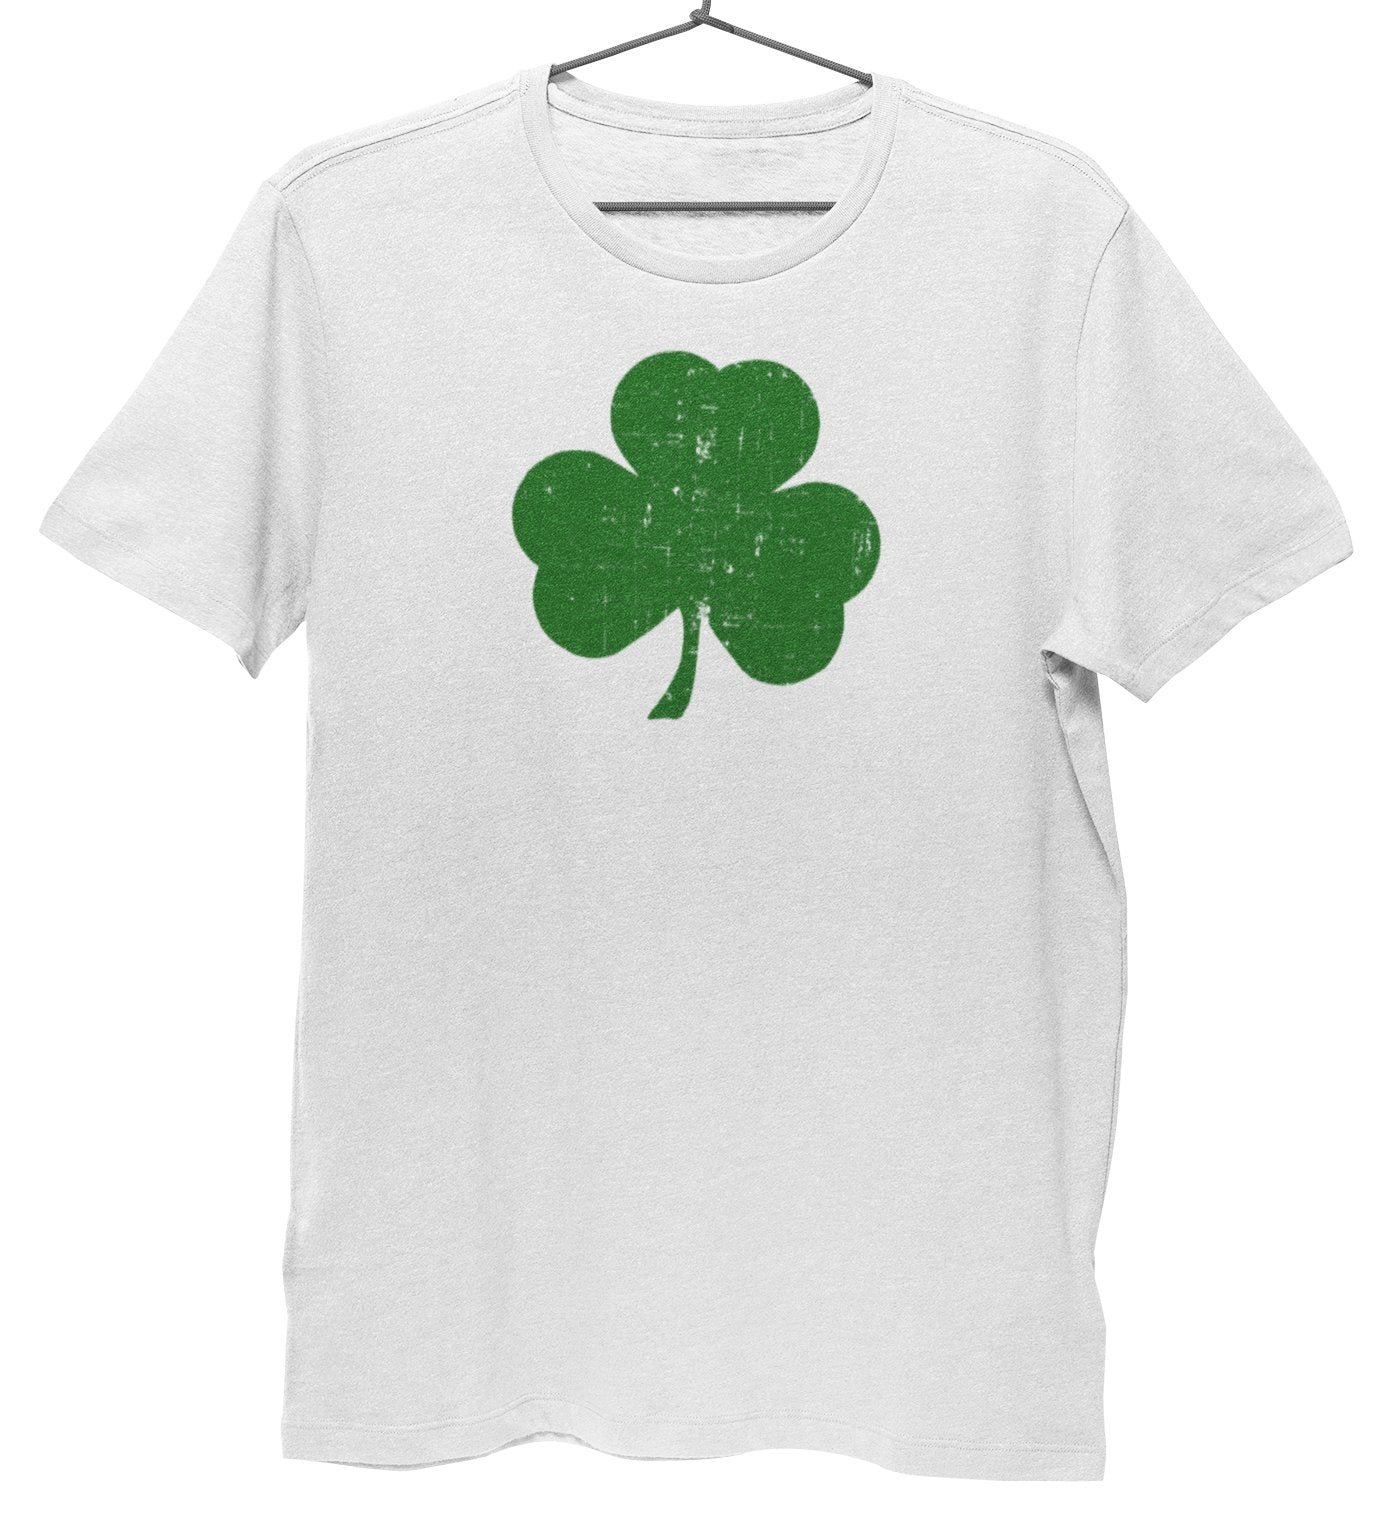 Men's Shamrock Tee Premium Ring-spun T-Shirt (White / Green)